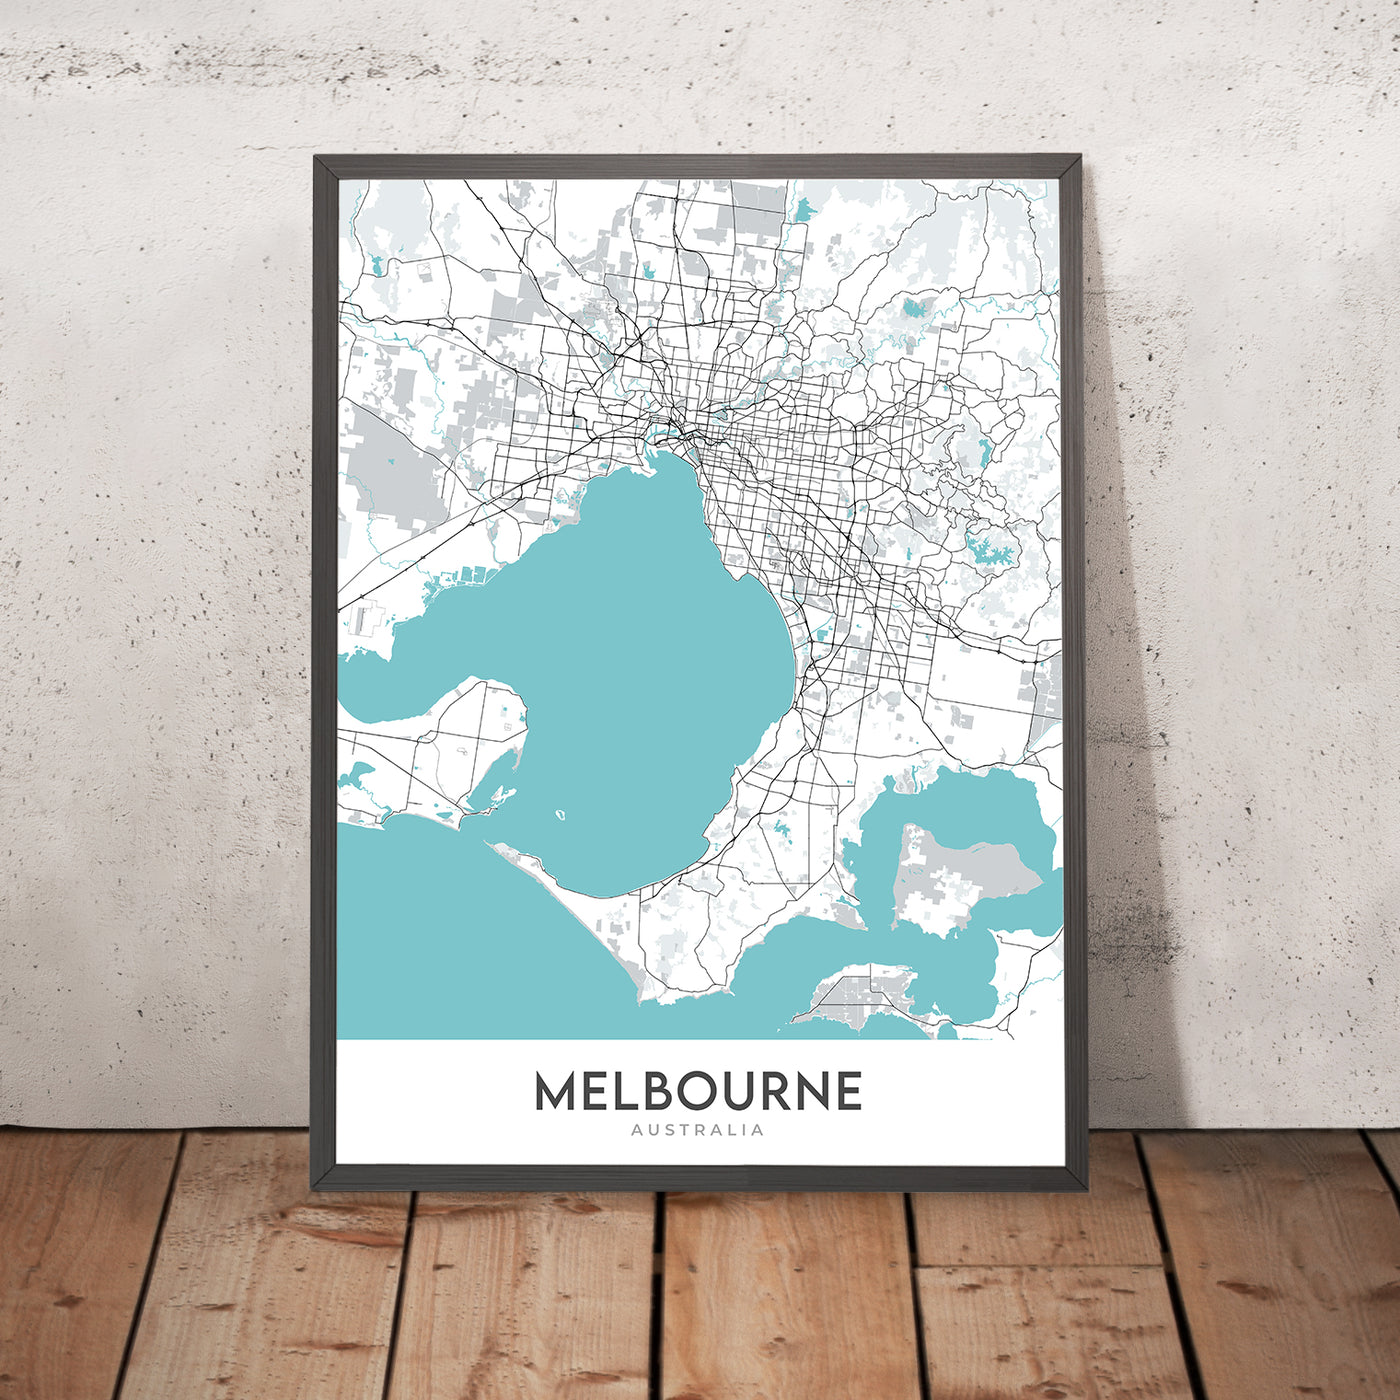 Mapa moderno de la ciudad de Melbourne, Australia: MCG, NGV, Queen Victoria Market, South Melbourne Market, Prahran Market